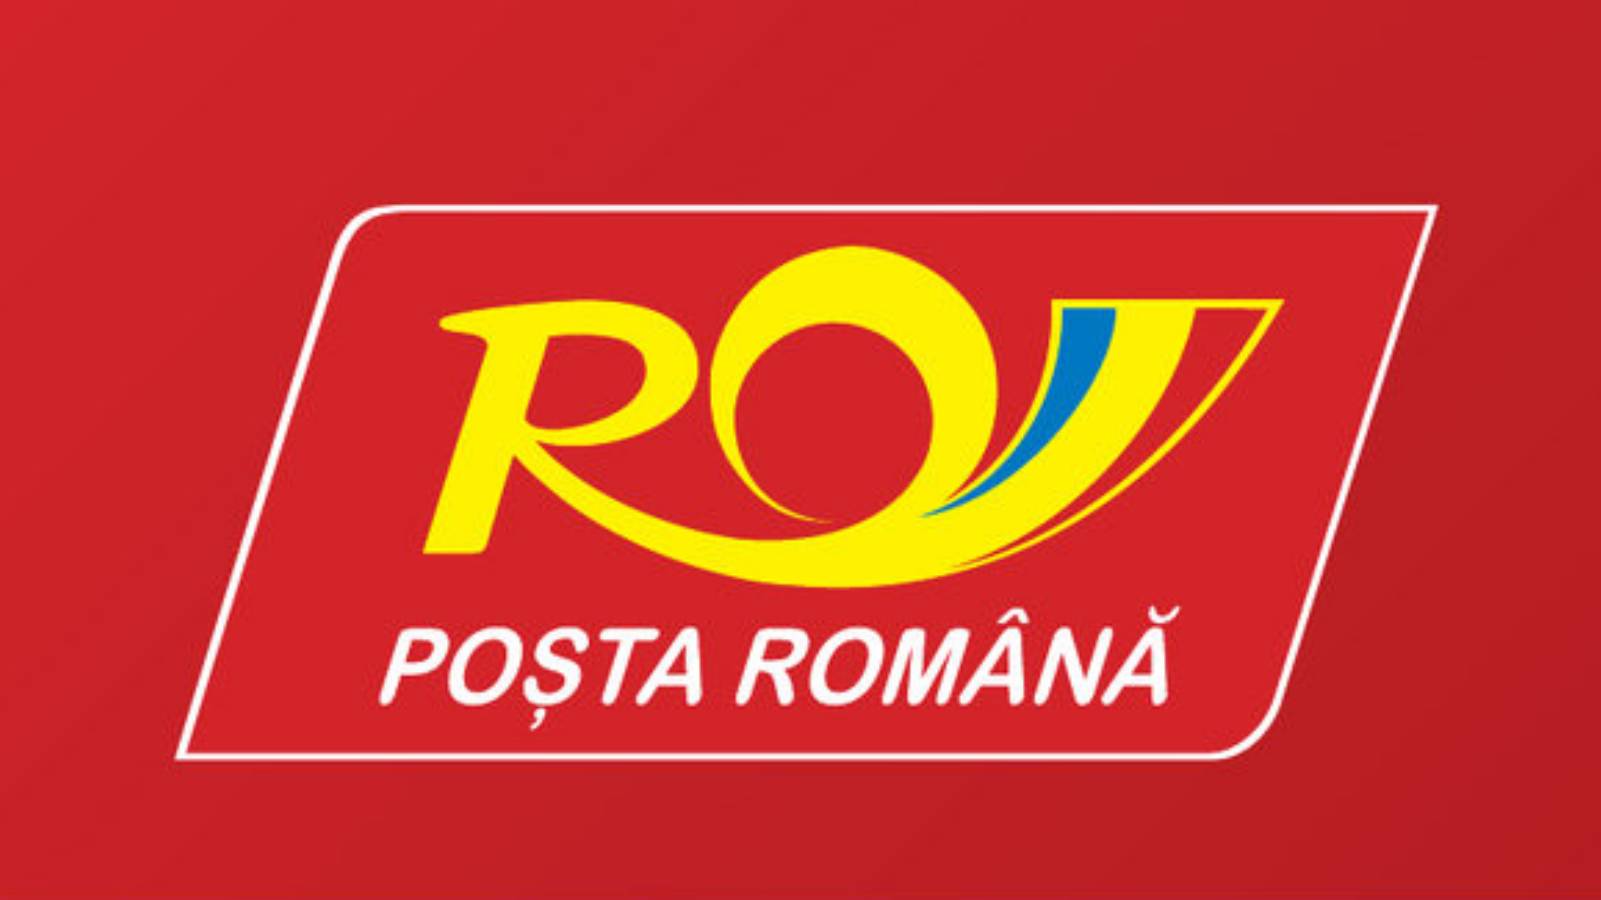 Le phishing de la poste roumaine a payé